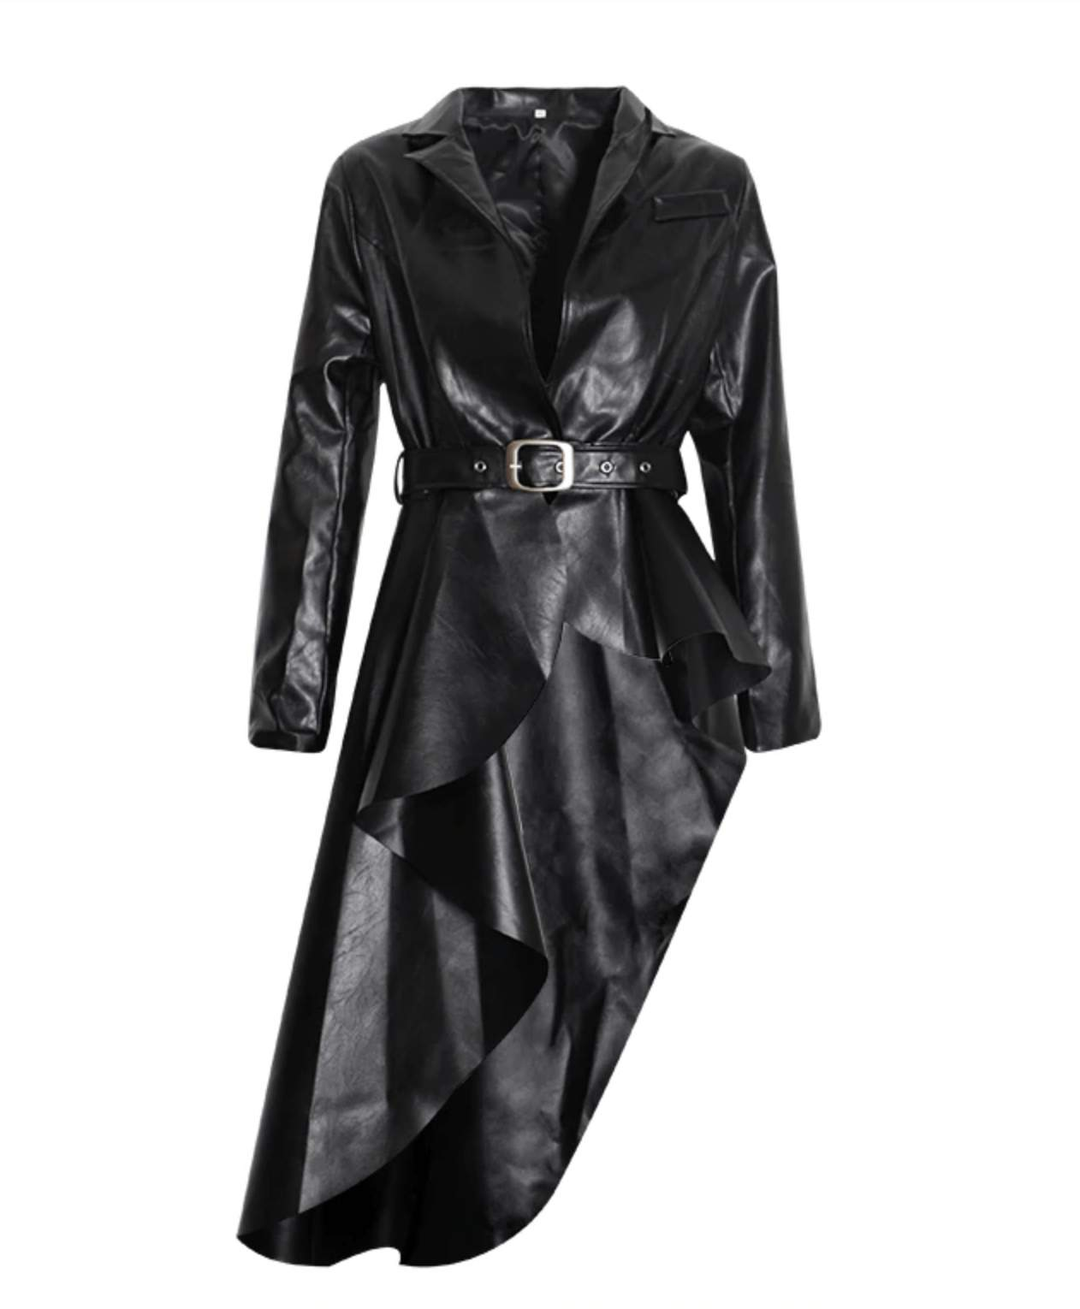 Lorraine-missodd.com-Color-black,Color-brown,Color_black,Color_brown,Dress-فستان,in-stock,Jacket-جاكيت,UPDATE